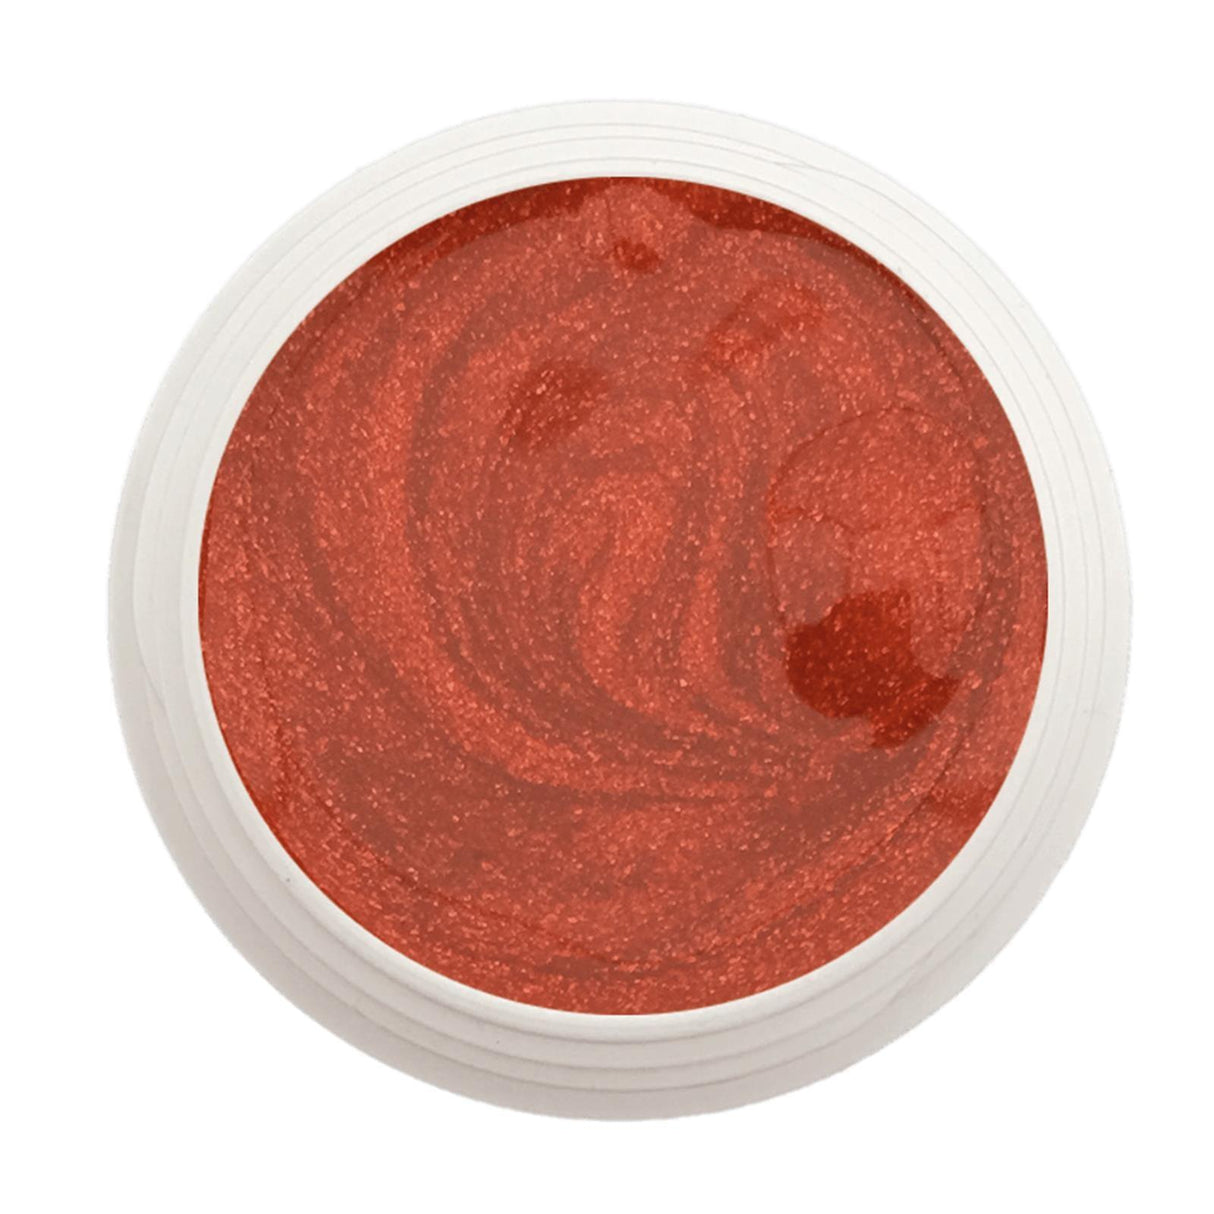 #182 Premium-EFFEKT Color Gel 5ml Dunkles Orange mit braunem Unterton und leichtem Schimmereffekt - MSE - The Beauty Company